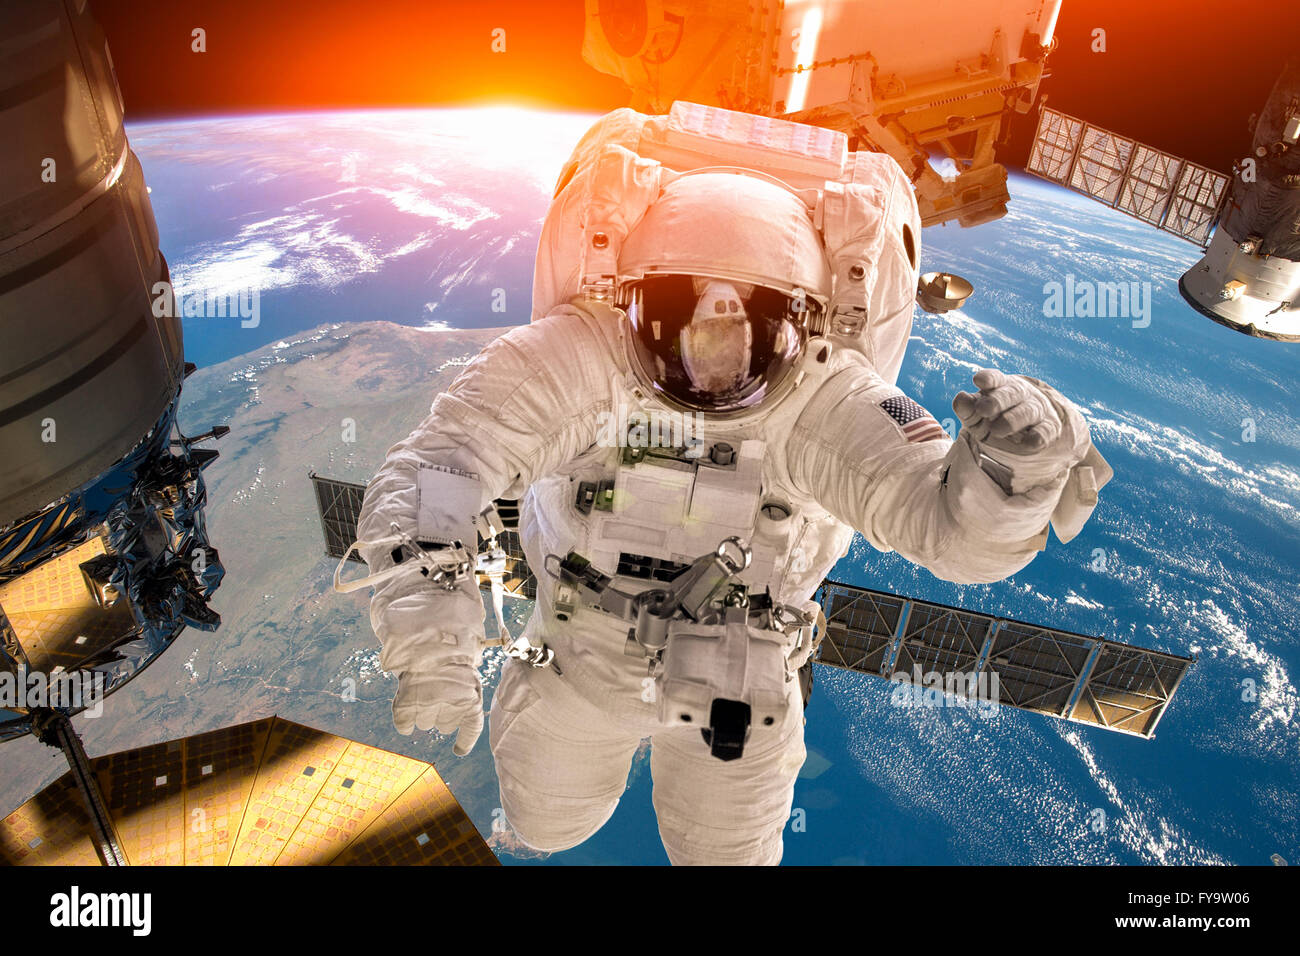 Station spatiale internationale et astronaute dans l'espace au cours de la planète Terre. Éléments de cette image fournie par la NASA. Banque D'Images